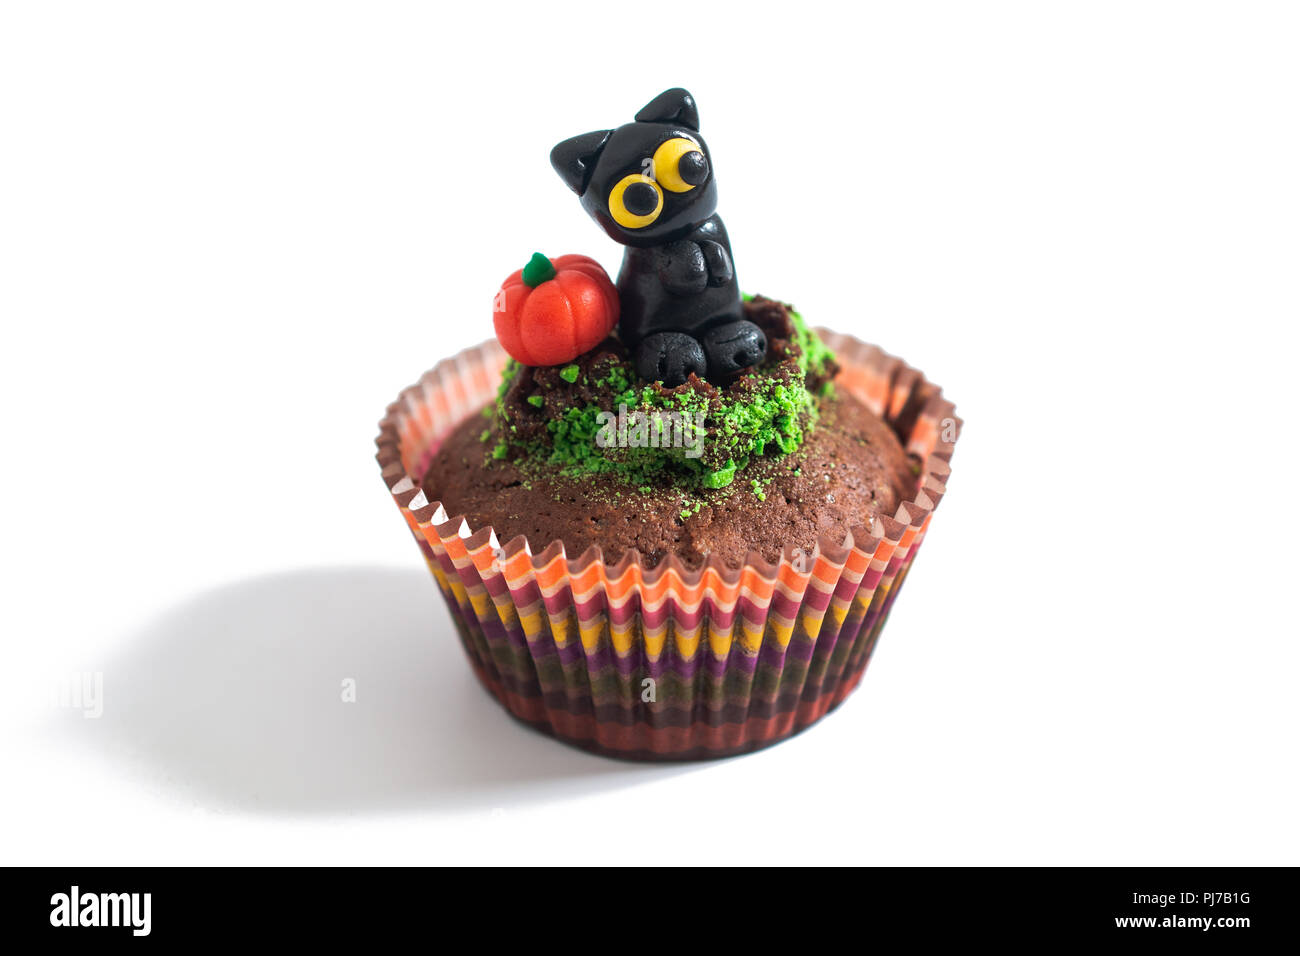 Halloween de fantaisie colorée alimentaire cupcake brownies avec Black Cat et le fondant de citrouille décorer sur fond blanc Banque D'Images